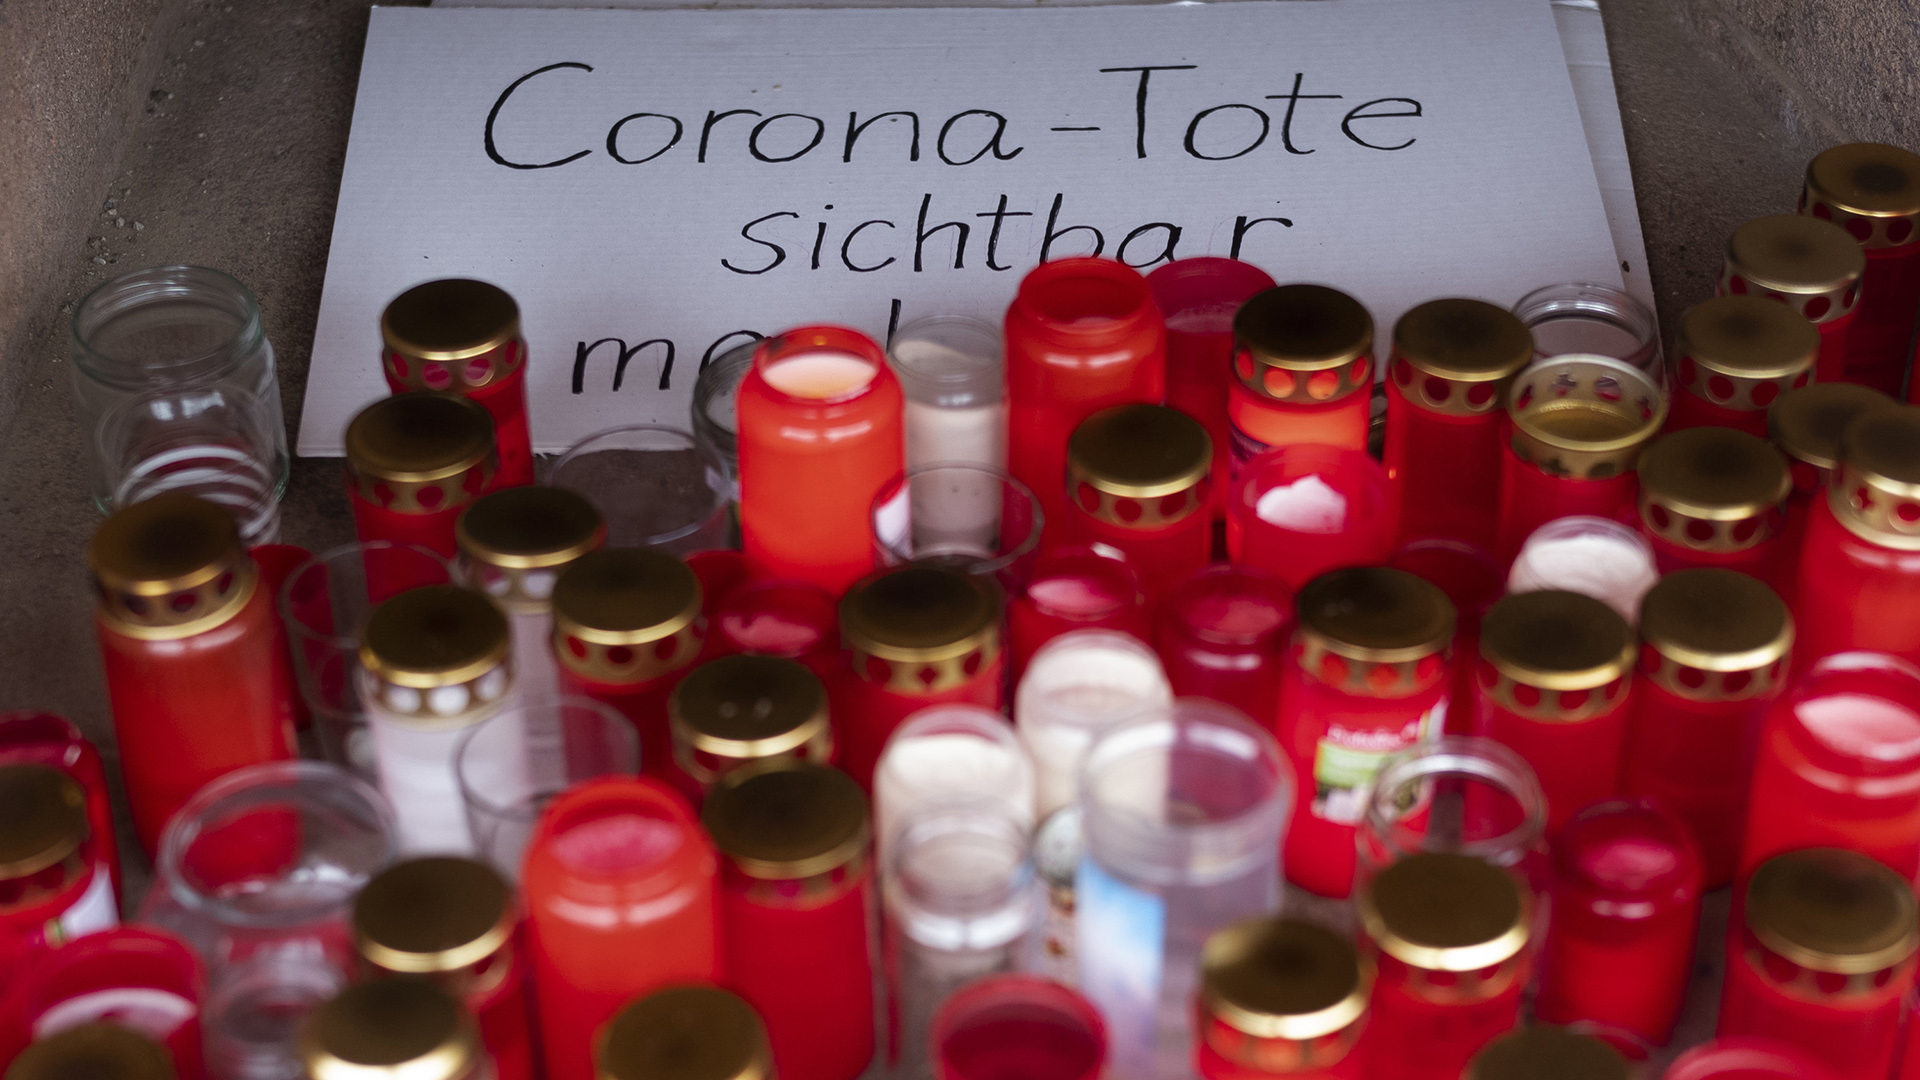  Zahlreiche brennende Grablichter stehen zum Gedenken an Corona-Tote an einem Gedenkort.